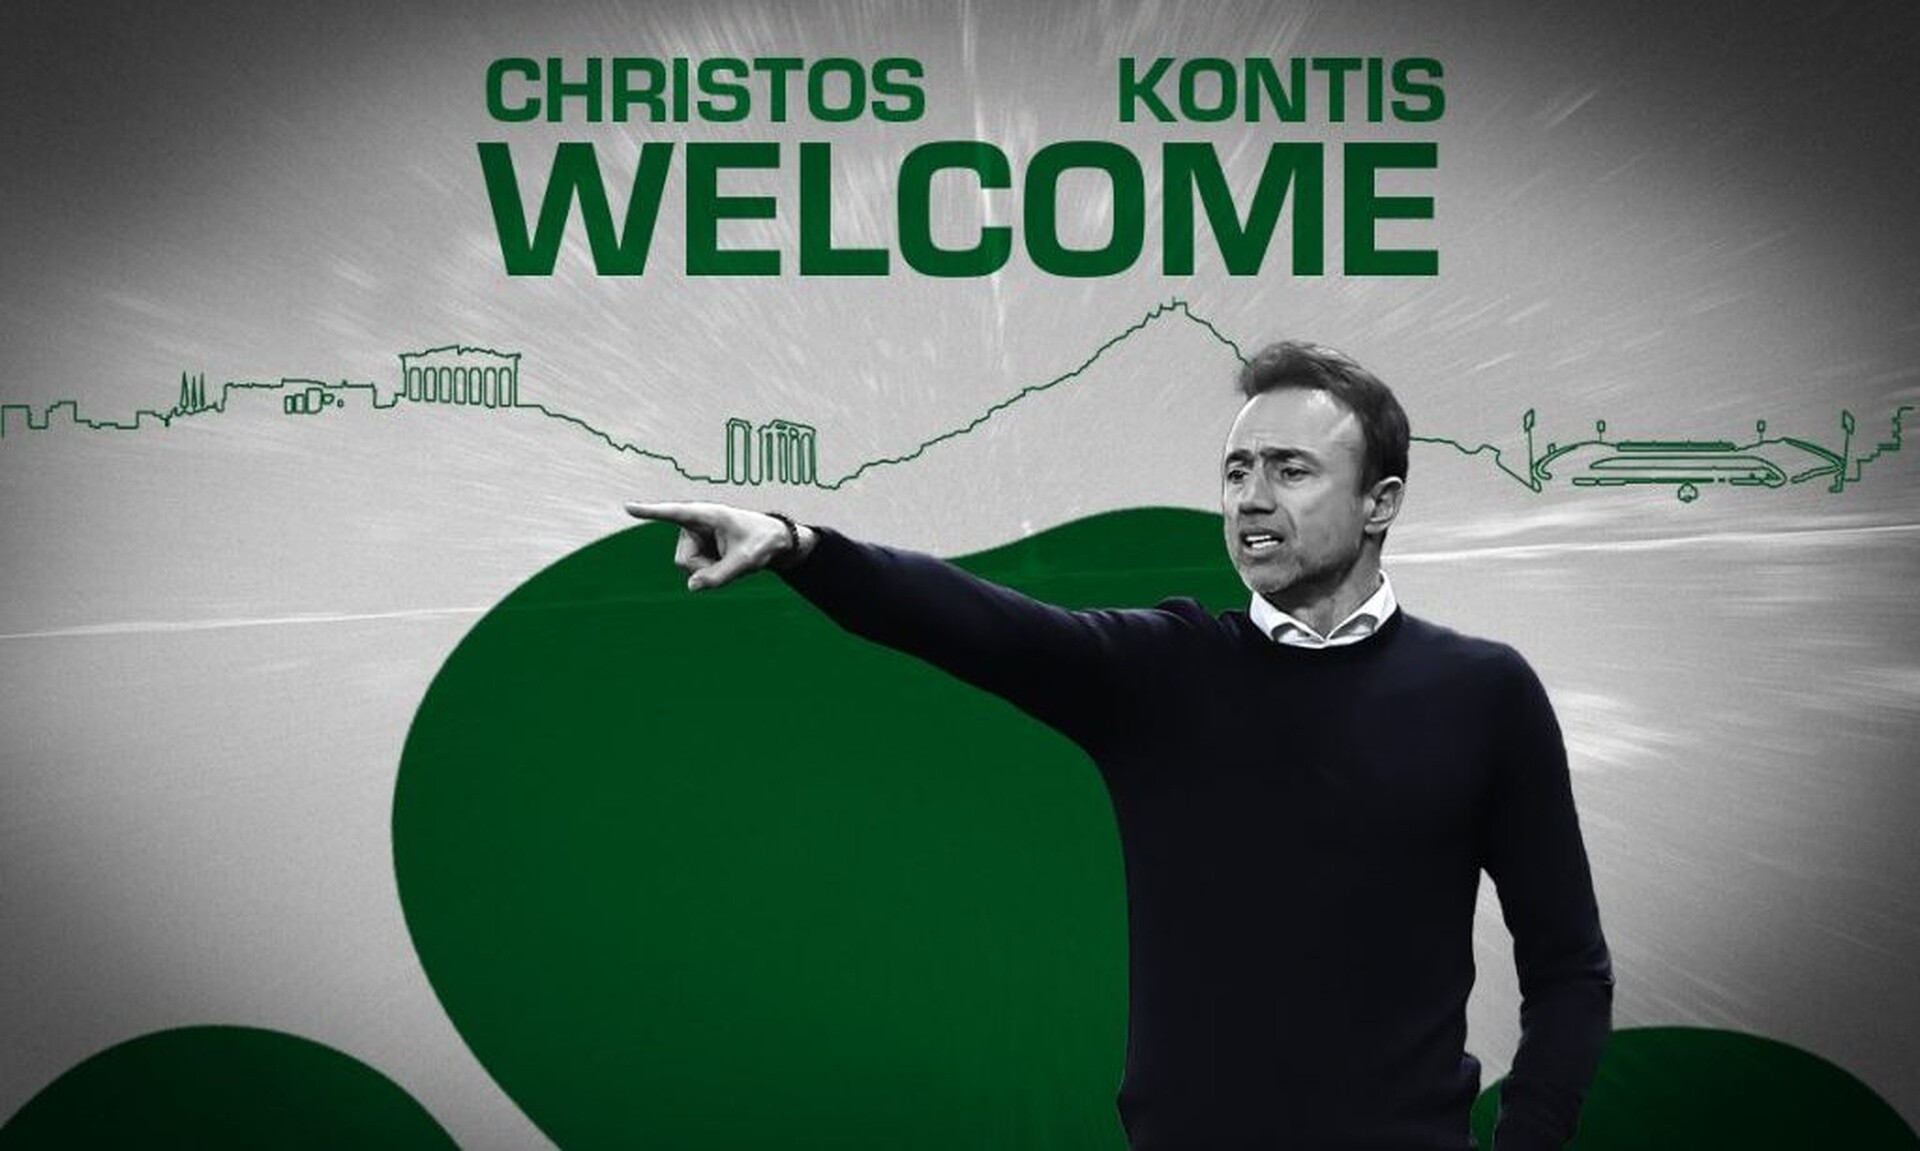 Παναθηναϊκός: Ανακοινώθηκε ο Χρήστος Κόντης ως νέος προπονητής - Ήταν βοηθός του Ιβάν Γιοβάνοβιτς